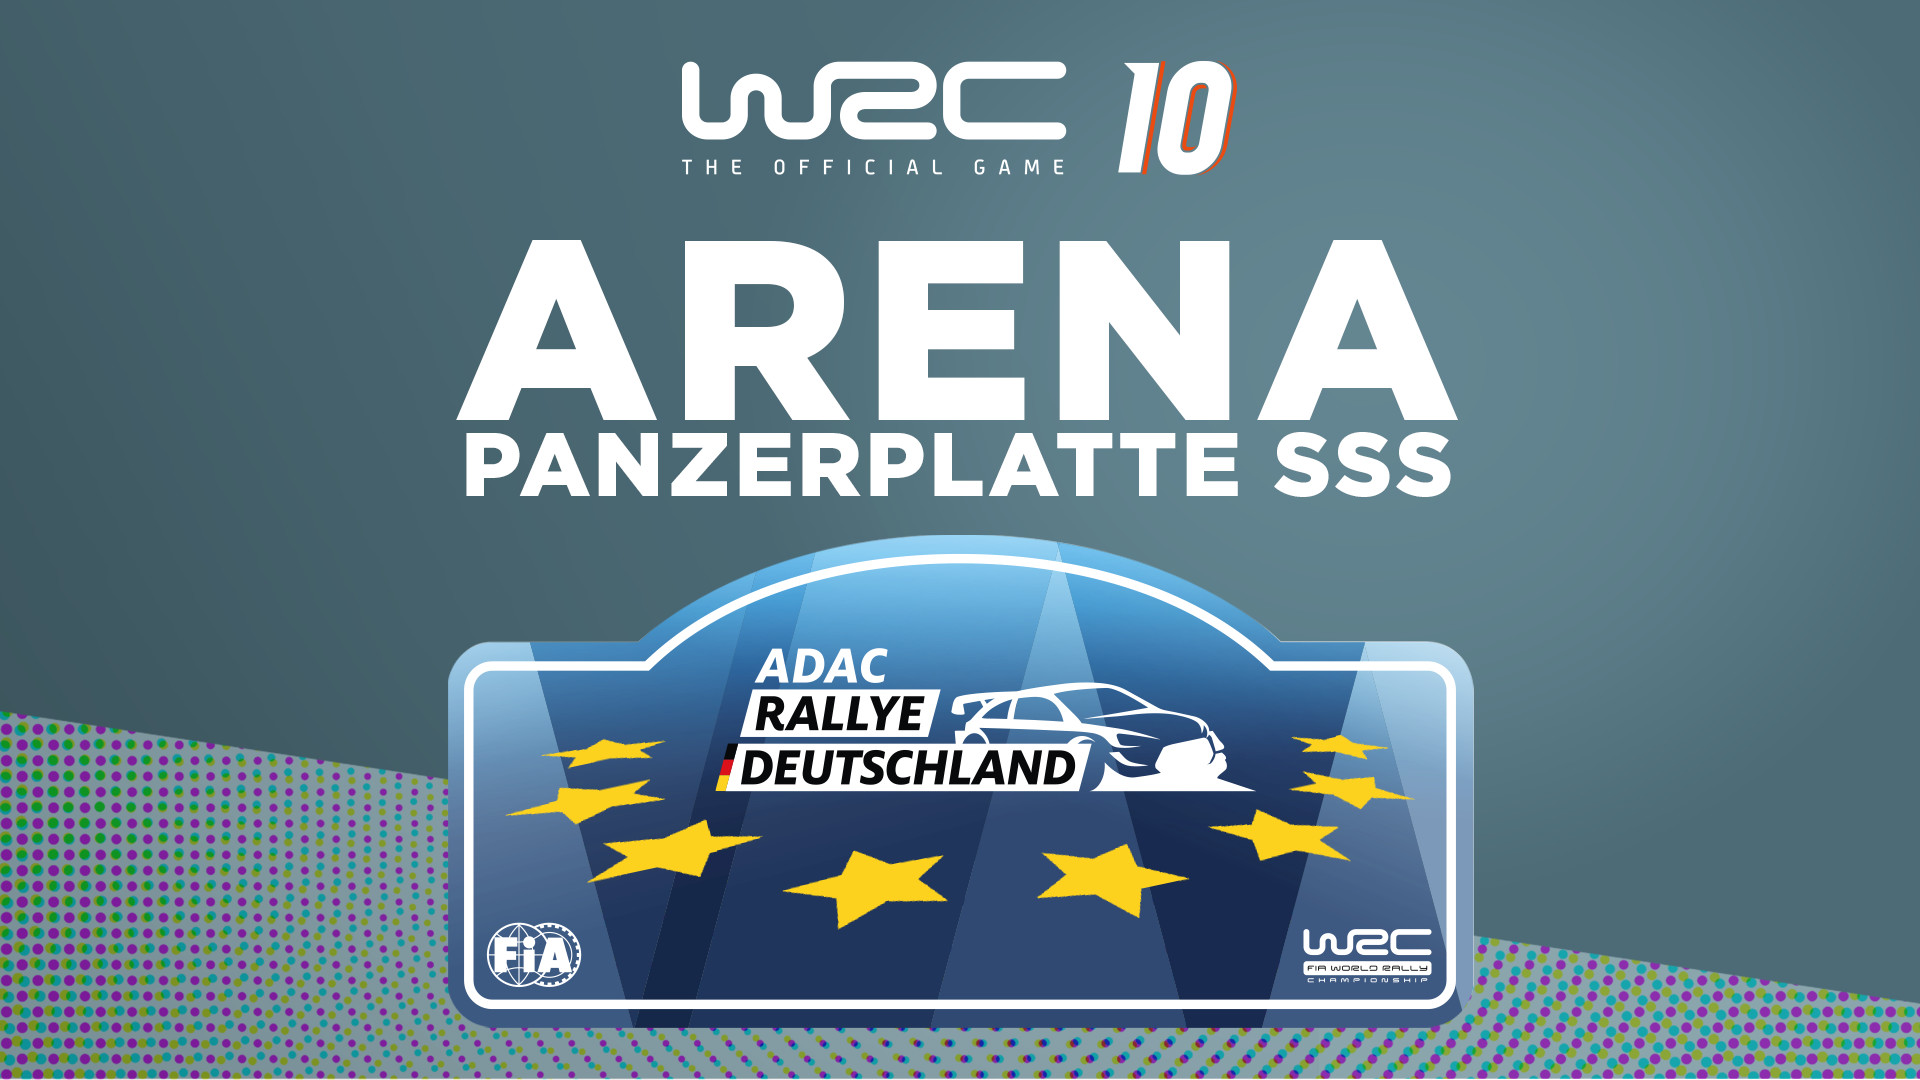 WRC 10 - Arena Panzerplatte SSS DLC Steam CD Key 4.51 usd